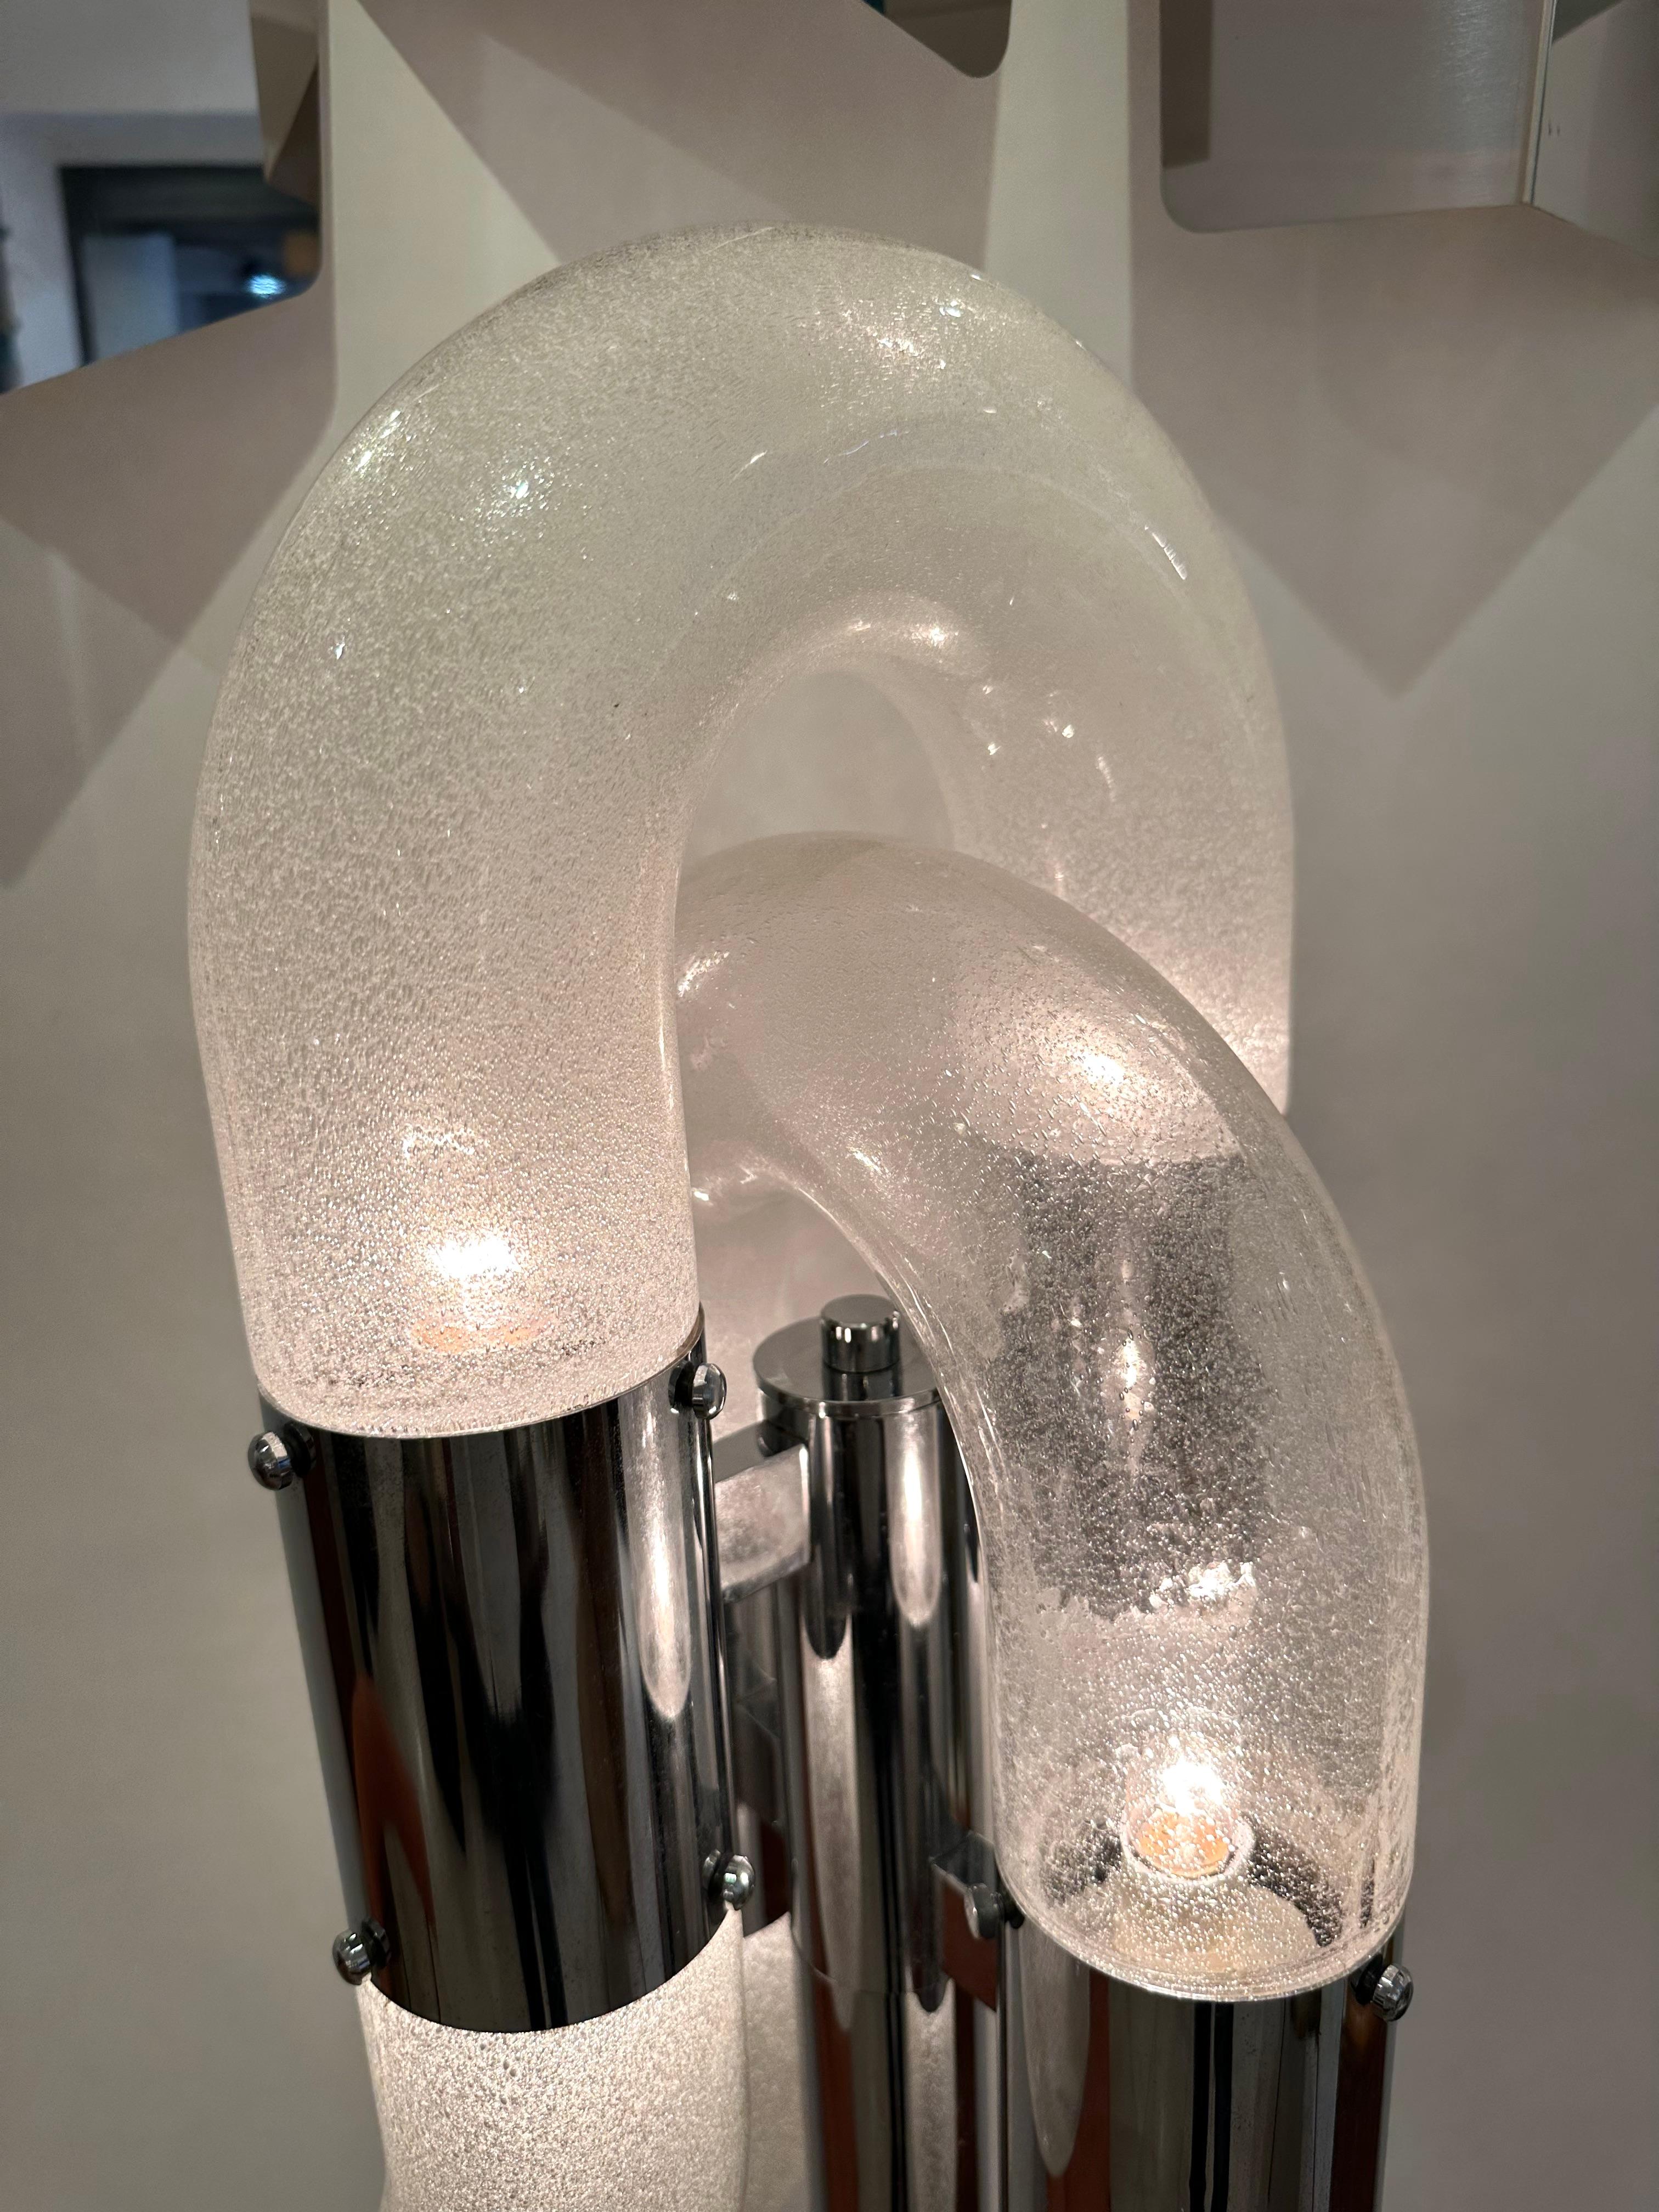 Seltene Stehlampe Ghost Modell Metall Chrom und geblasen Blase Murano Glas von Aldo Nason, der Carlo Nason Bruder für die Herstellung Mazzega Murano. Berühmte Hersteller wie Venini, Vistosi, La Murrina, Hollywood Regency, Poliarte, Stilnovo,